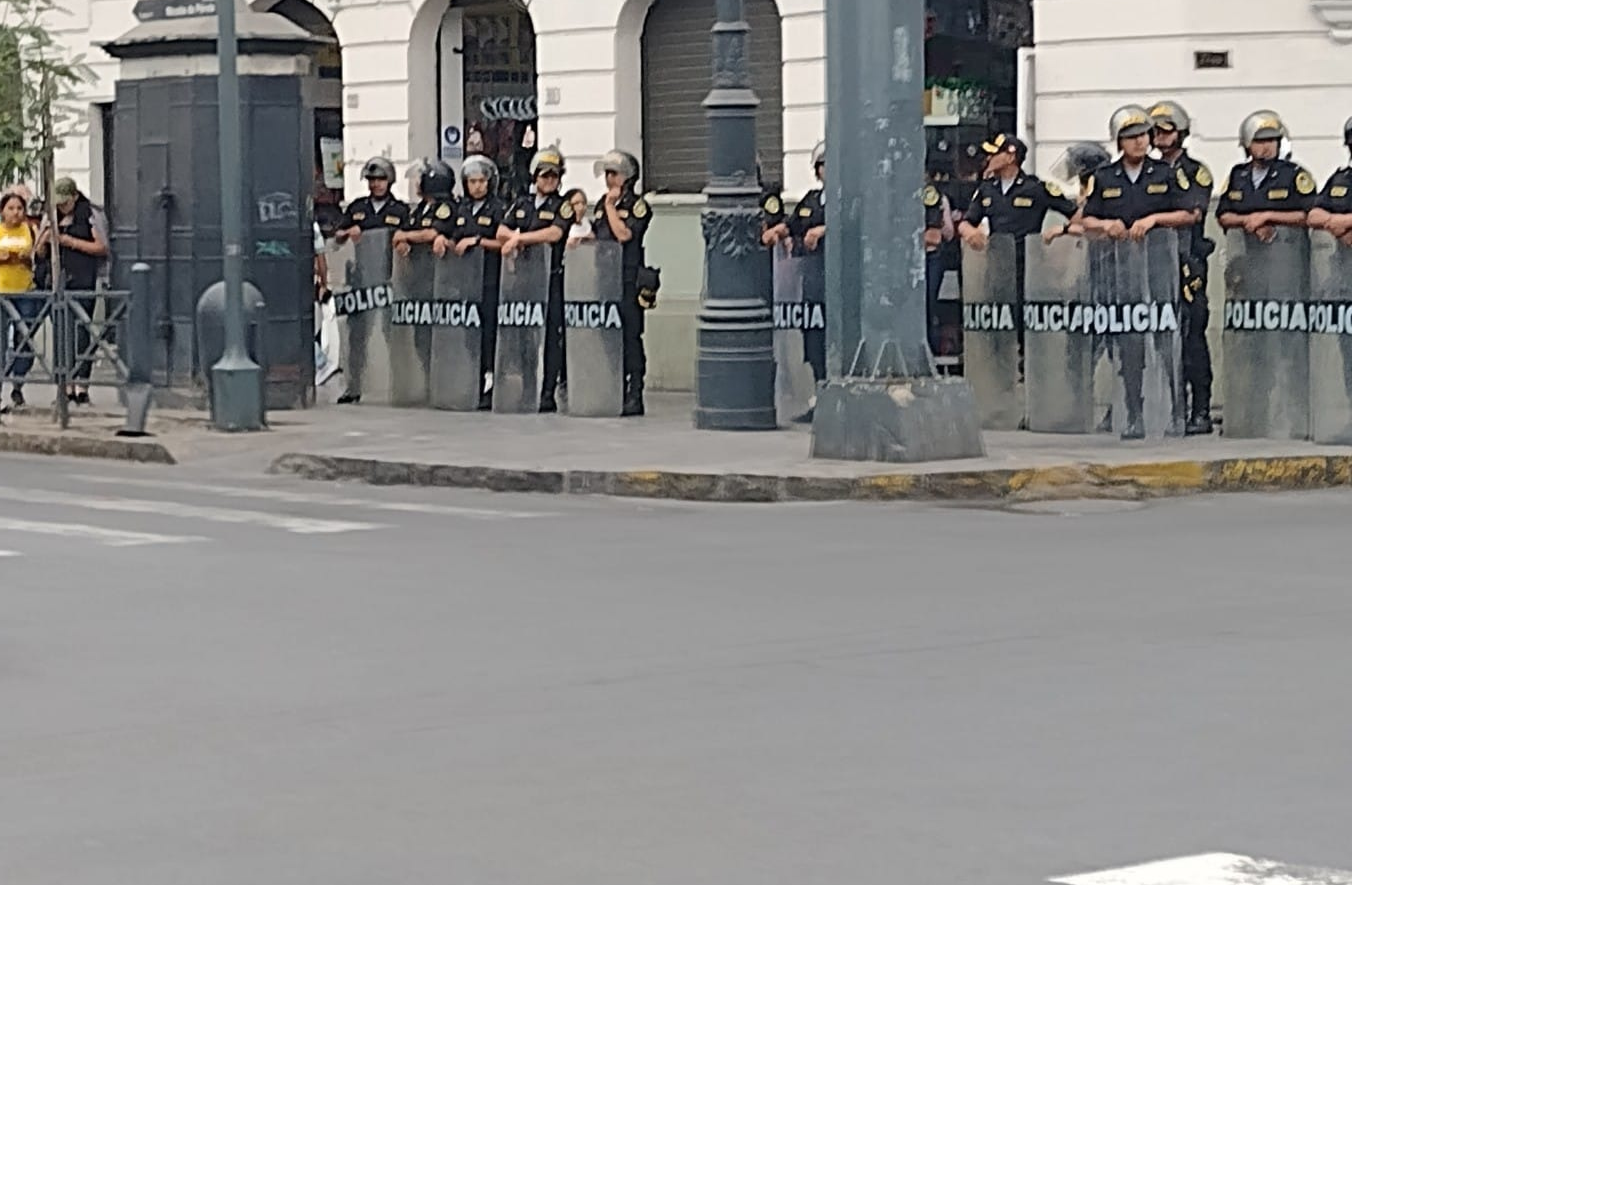 Presencia policial en las marchas (Foto: agendapais.com)